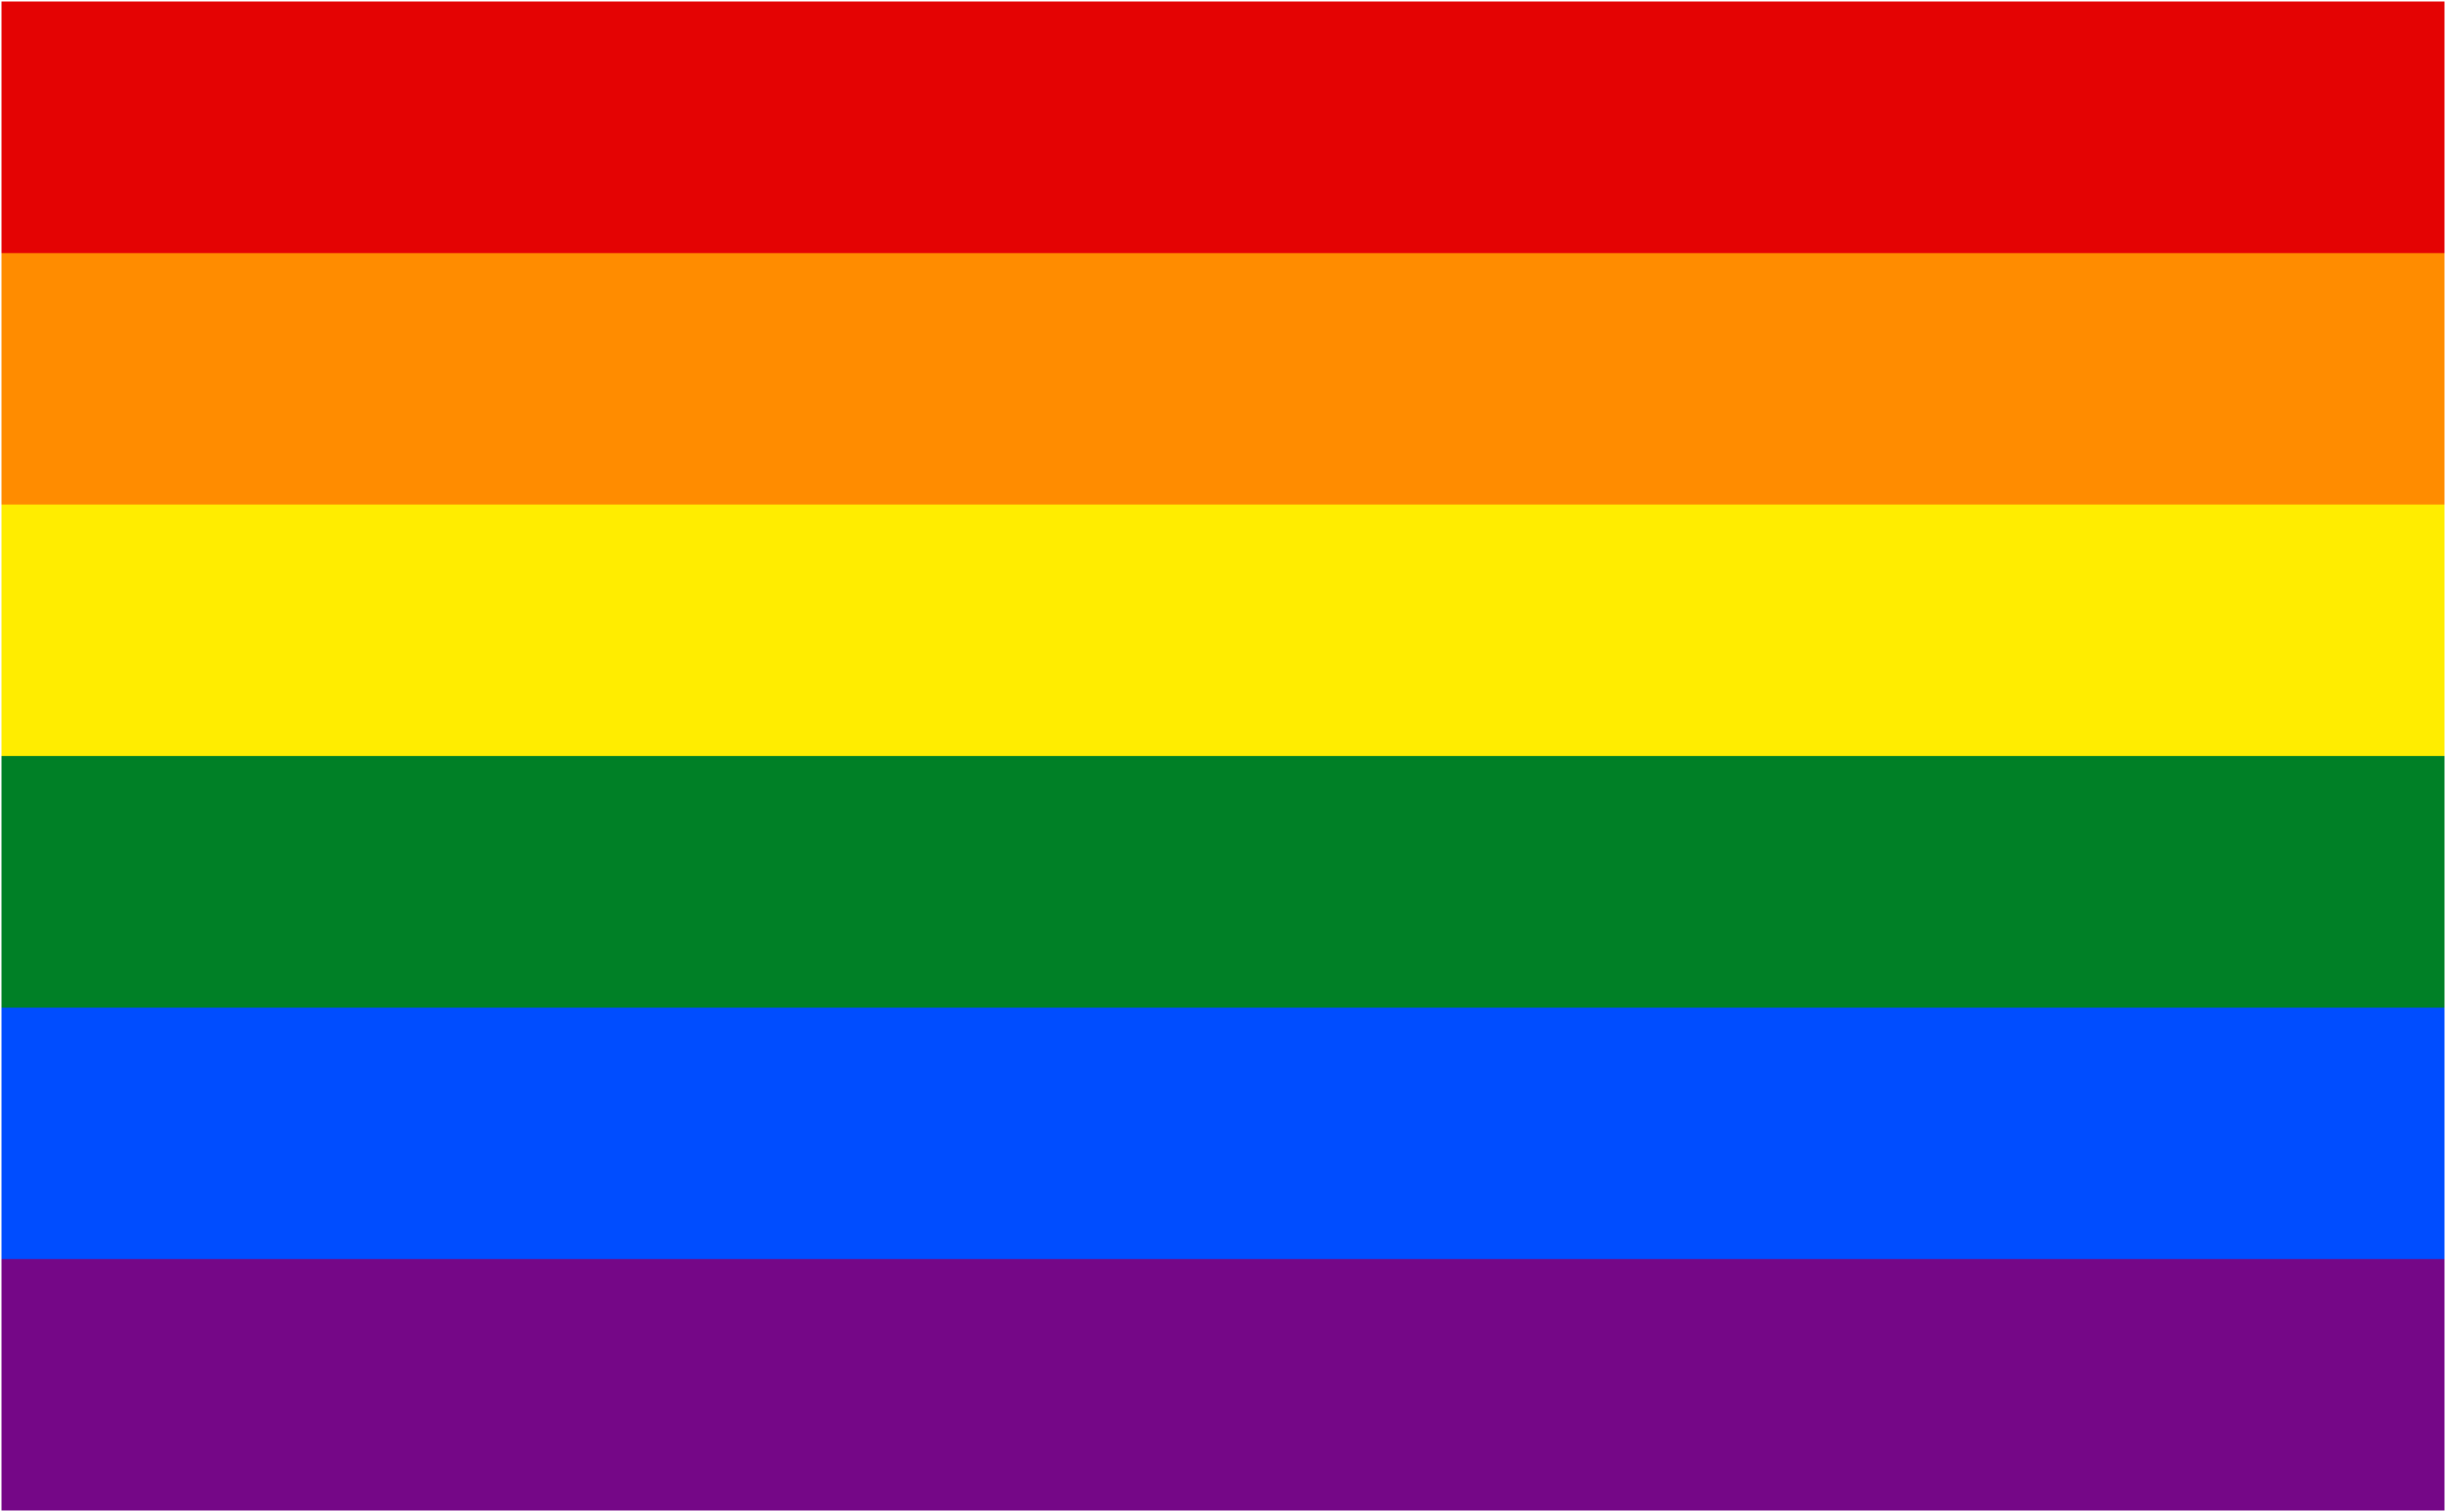 LGBTQ+ Flags (U.S. National